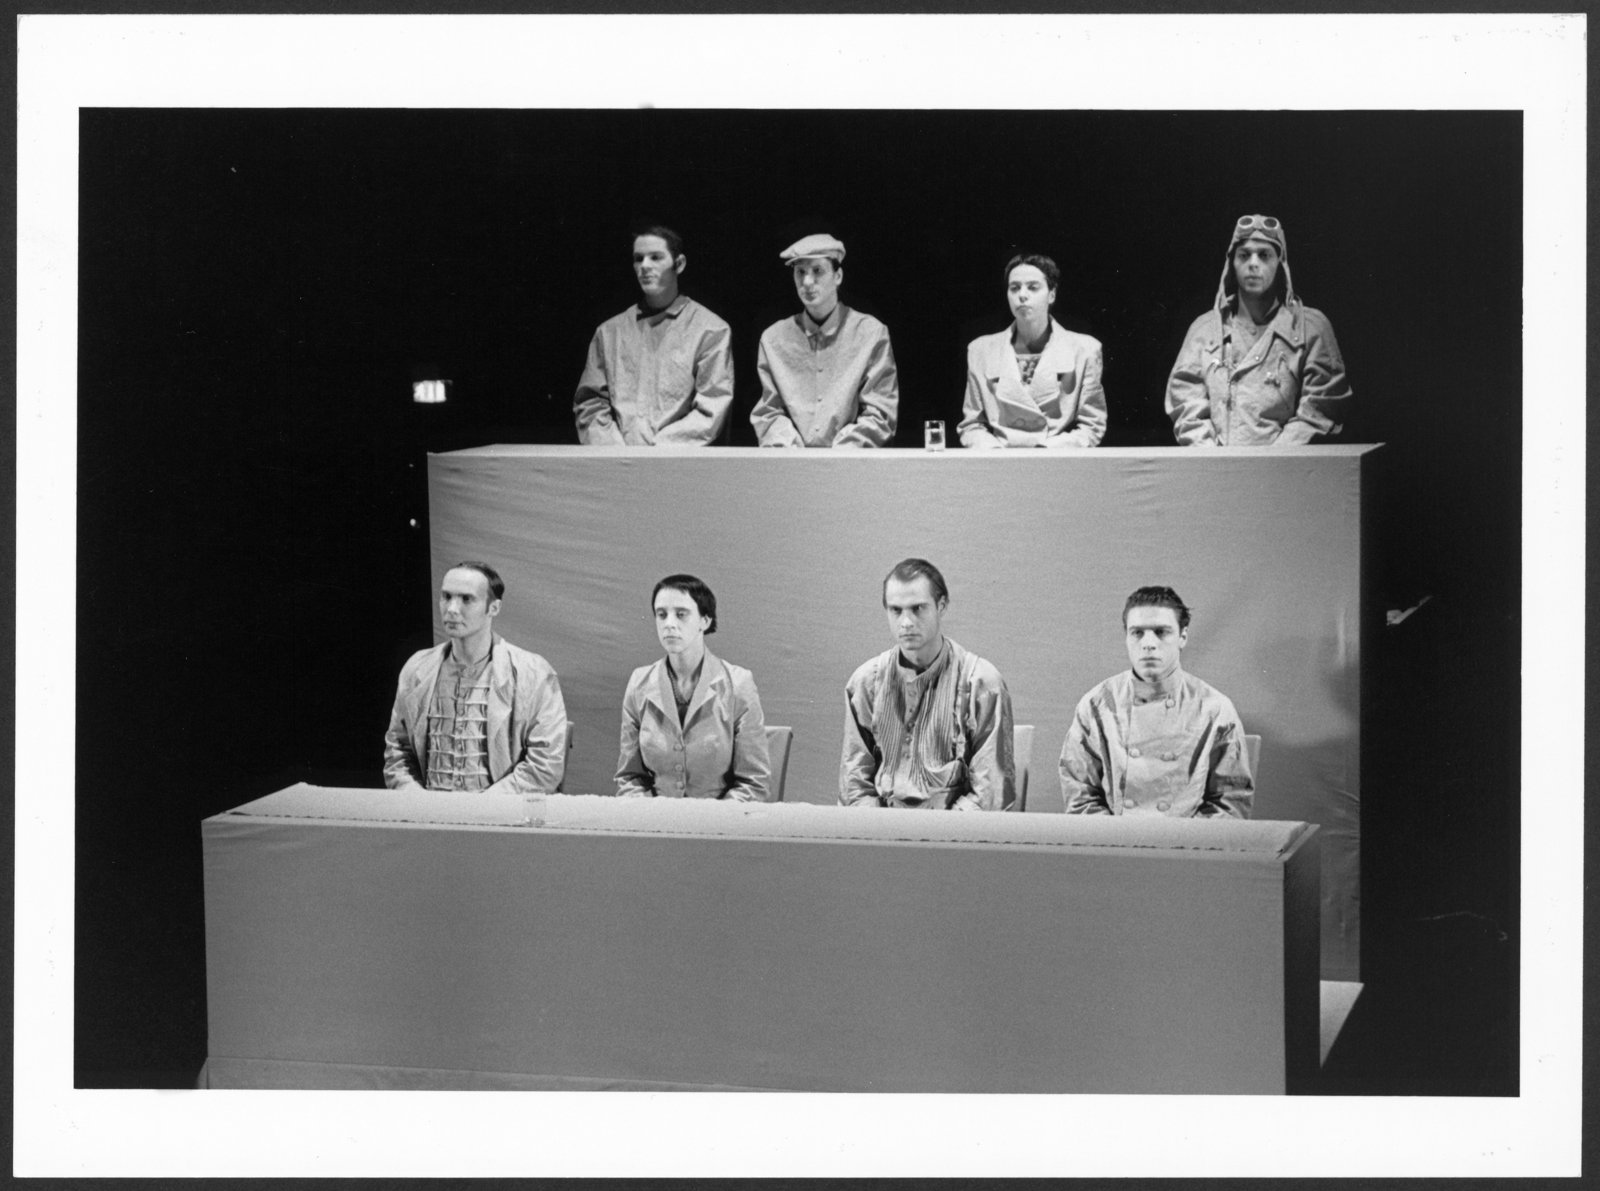 Bild der Studioinszenierung "Die Maßnahme" an der Hochschule für Schauspielkunst Ernst Busch (Hochschule für Schauspielkunst Ernst Busch Berlin RR-F)